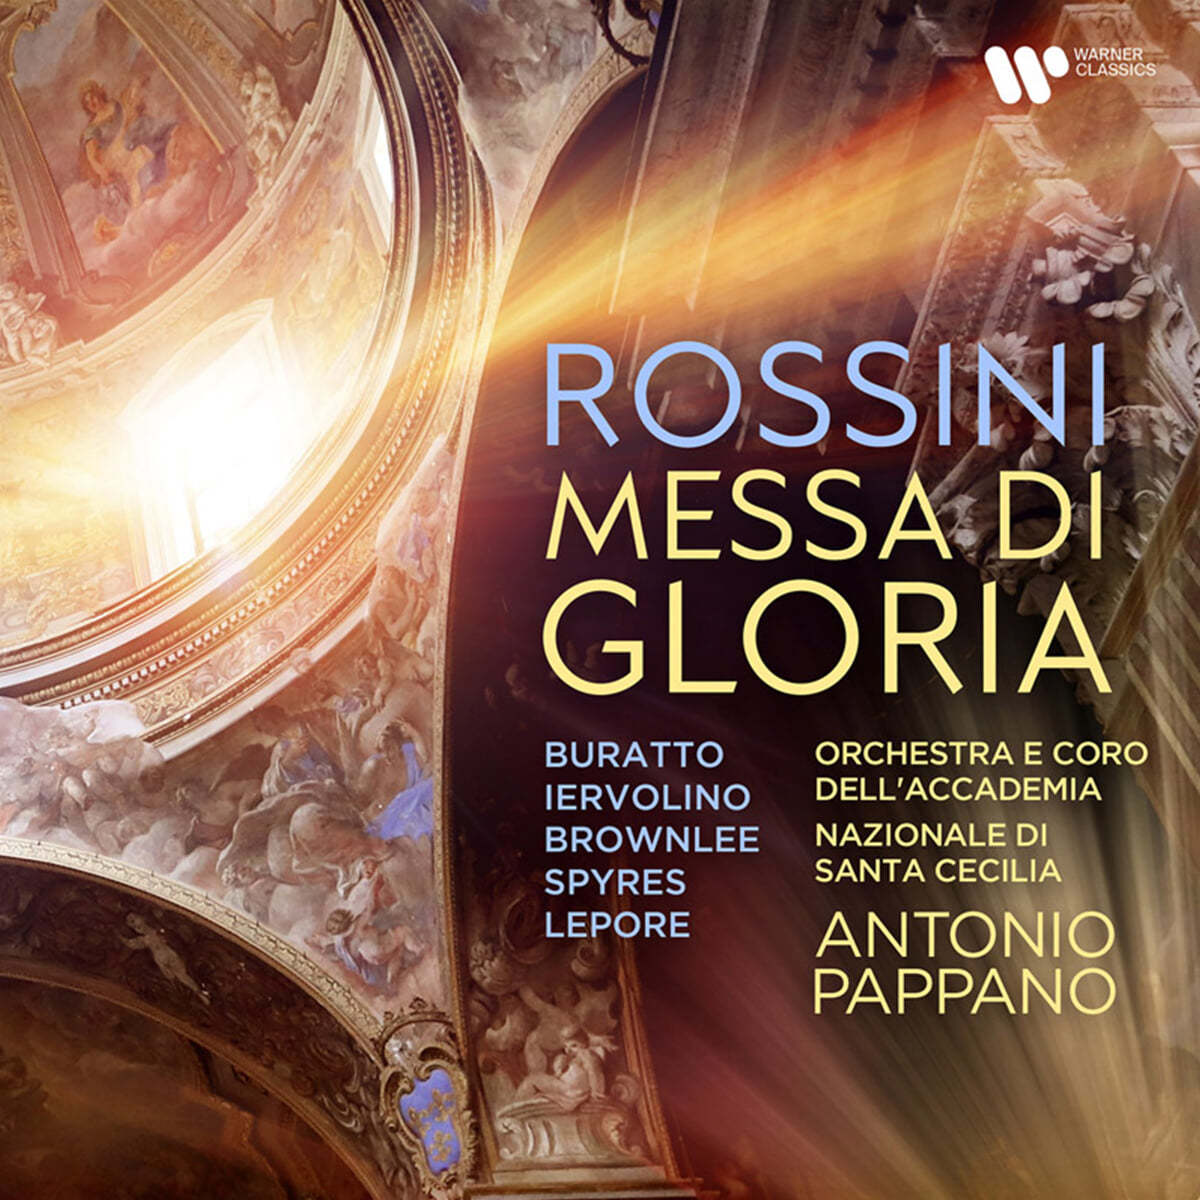 Antonio Pappano 로시디: 미사 글로리아 (Rossini: Messa di Gloria)